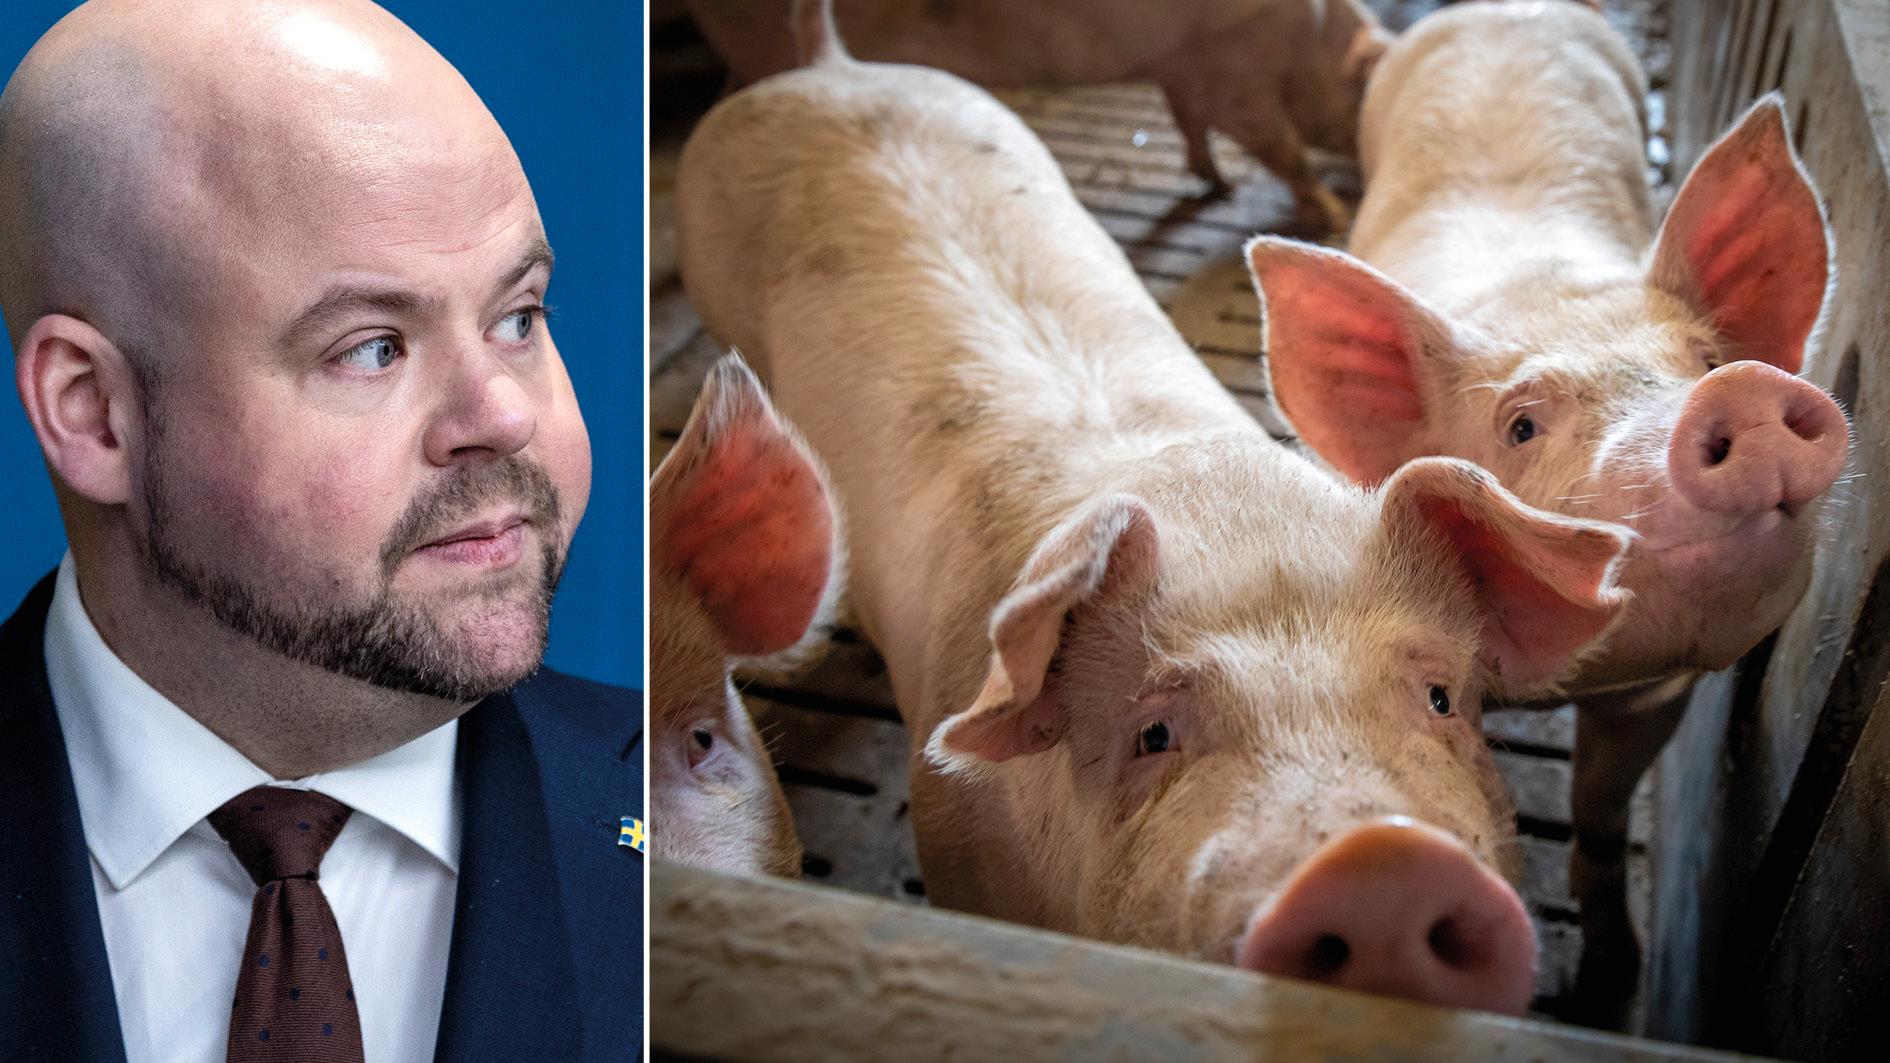 Landsbygdsminister Peter Kullgren meddelade nyligen att regeringen vill förenkla djurskyddet i Sverige. Det är med viss bestörtning vi som forskare återigen ser att regeringen enbart utmålar djurskyddet som en belastning, skriver 15 forskare tillsammans med andra i forskarvärlden.